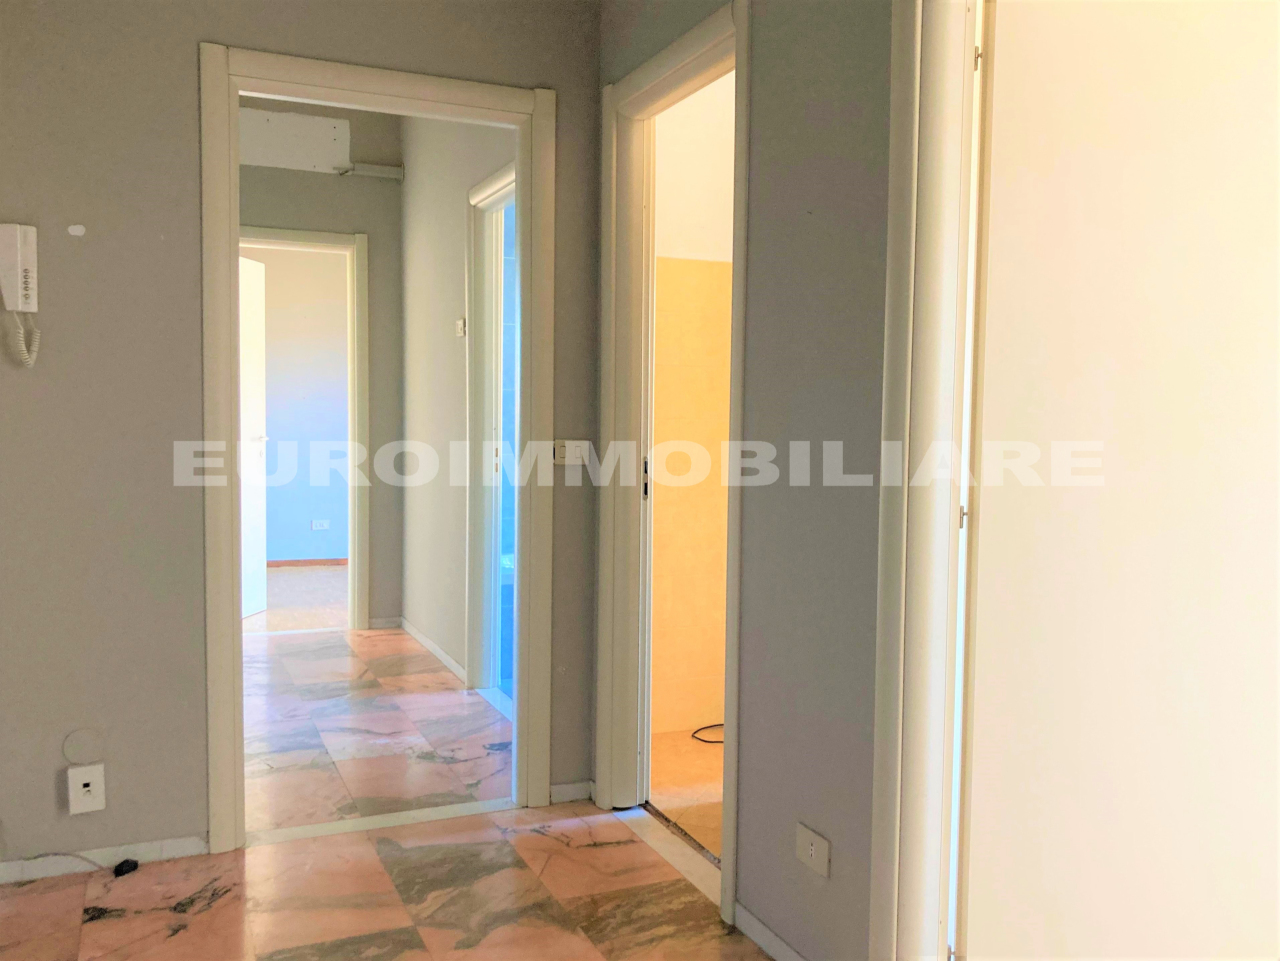 Appartamento in affitto a Brescia, 3 locali, prezzo € 650 | CambioCasa.it